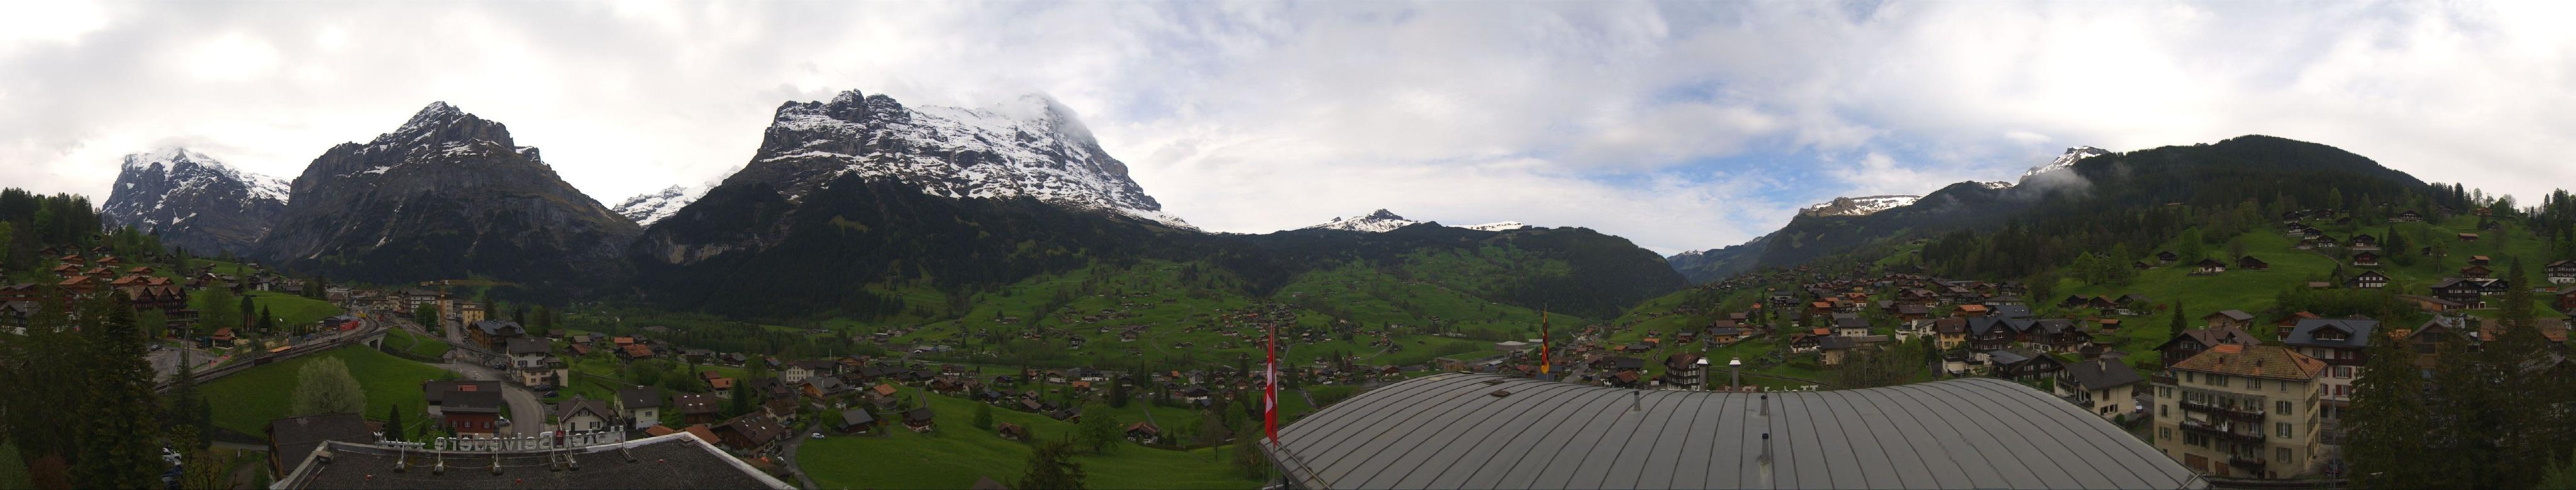 Grindelwald: Belvedere Swiss Quality Hotel Grindelwald - Eiger - Wetterhorn - Kleine Scheidegg